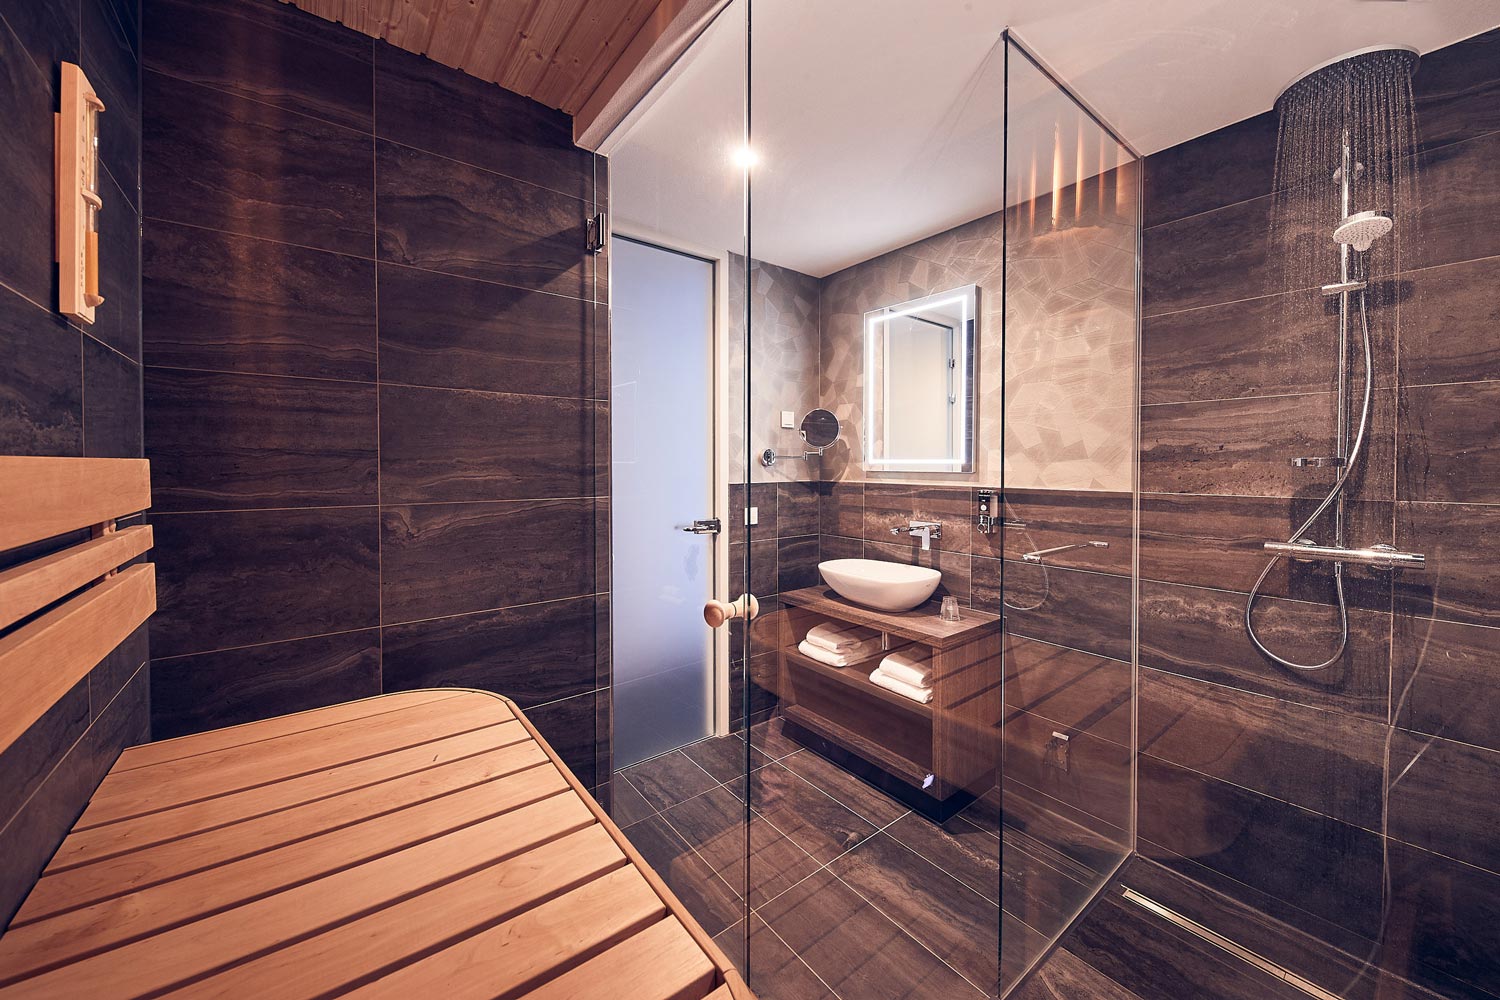 Hertog Ambitieus Automatisch Hotel room with a sauna - The Innsider - Online Magazine Inntel Hotels